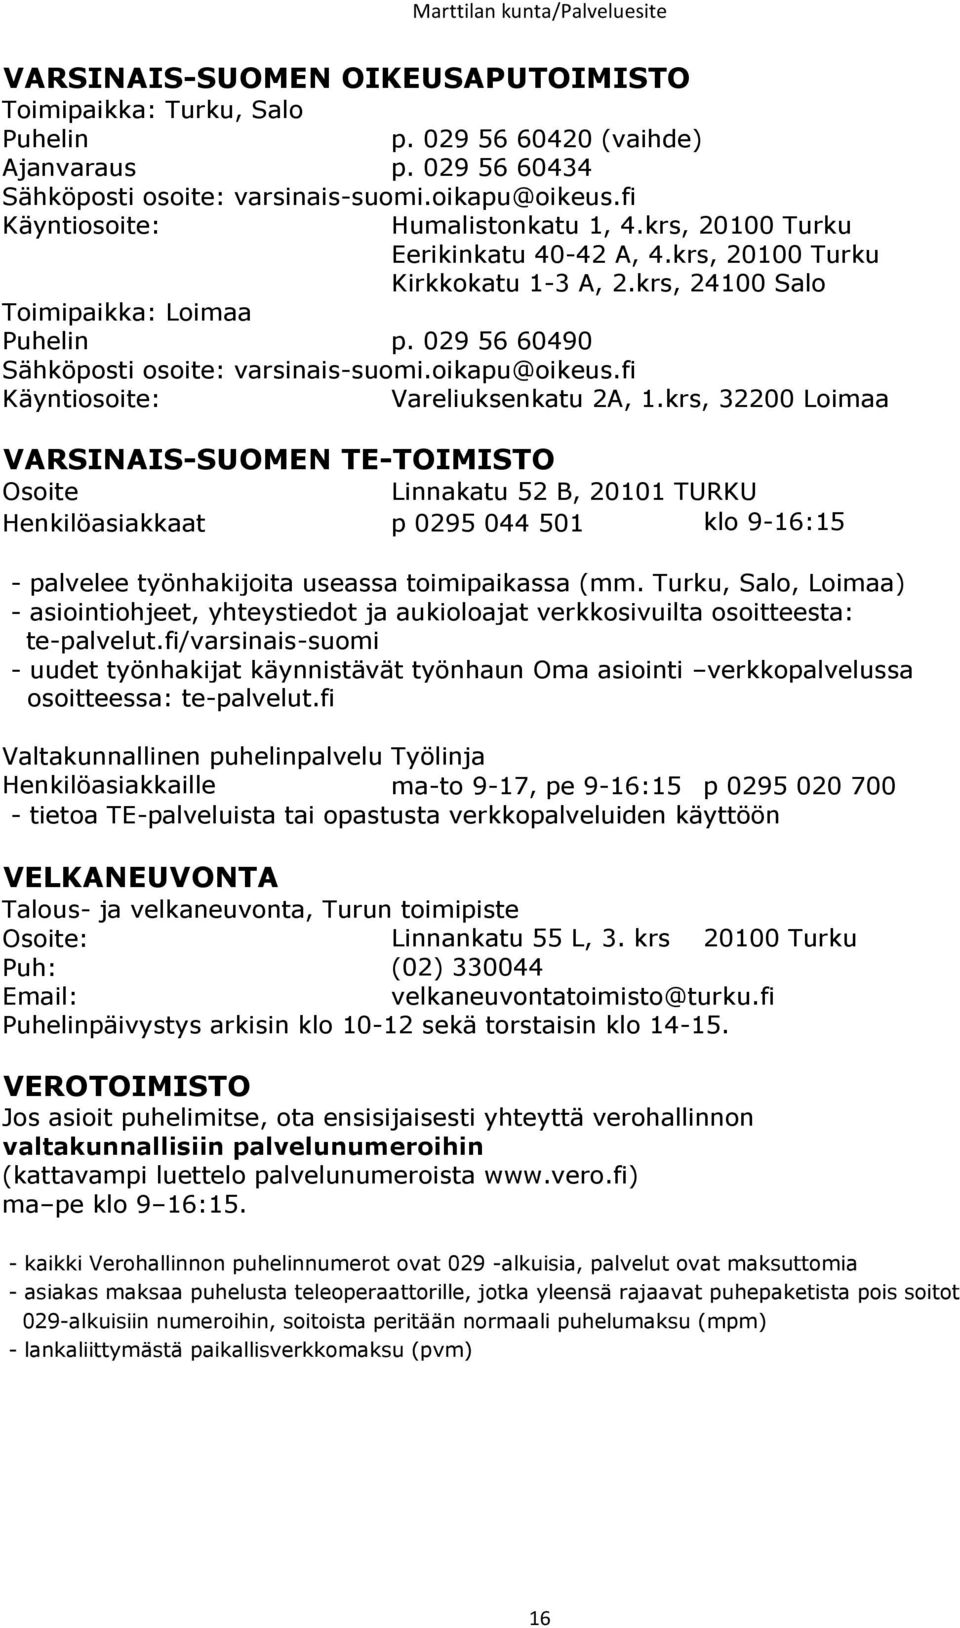 krs, 24100 Salo Sähköposti osoite: varsinais-suomi.oikapu@oikeus.fi Käyntiosoite: Vareliuksenkatu 2A, 1.